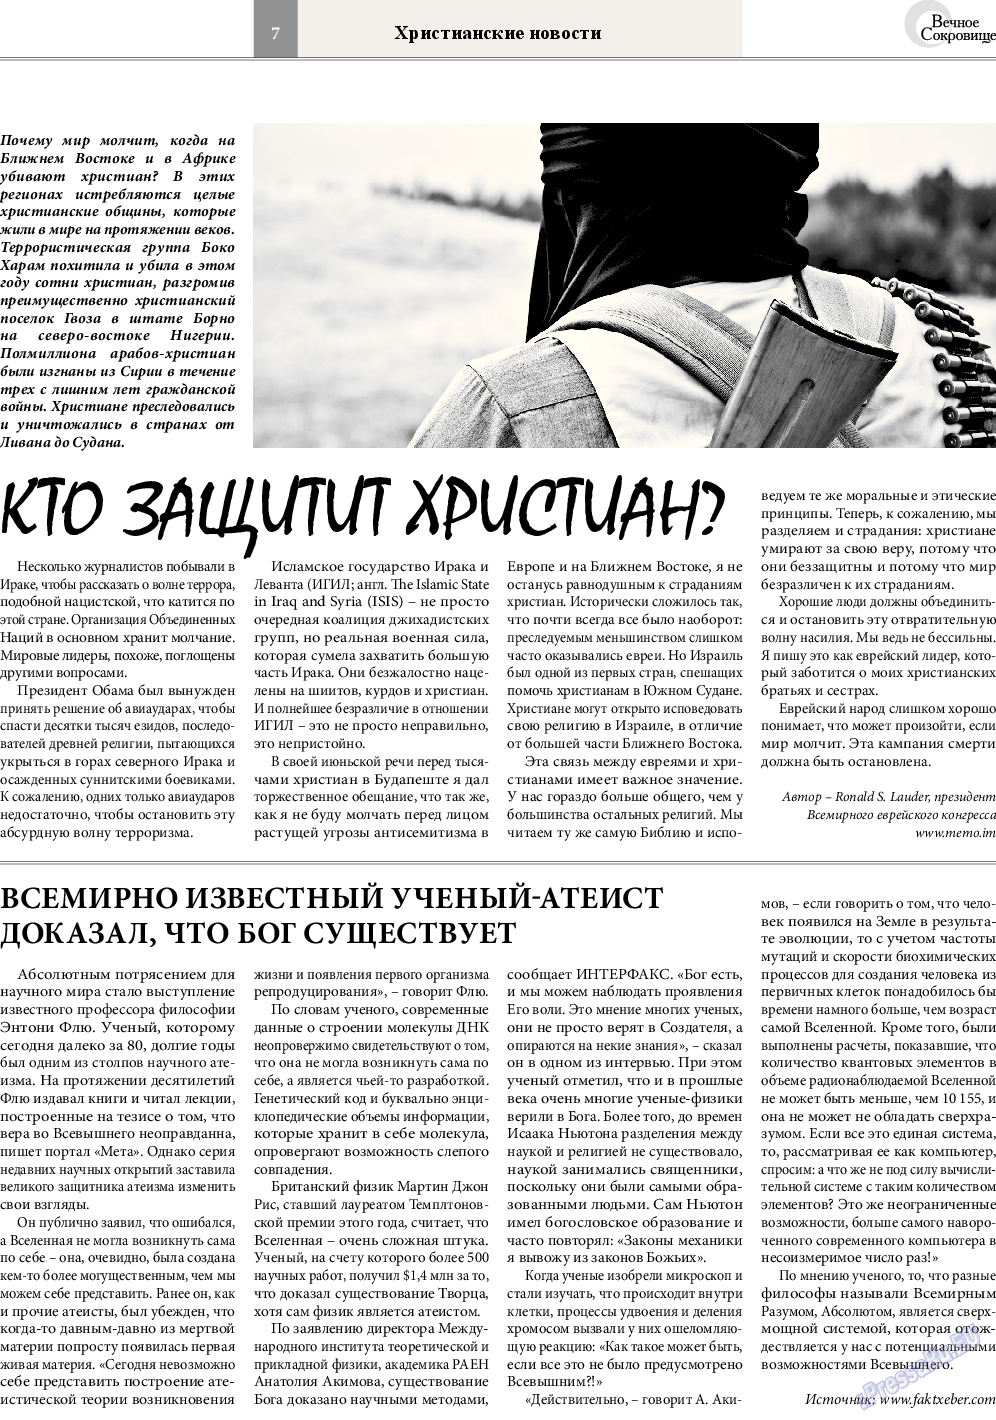 Вечное сокровище, газета. 2014 №5 стр.7